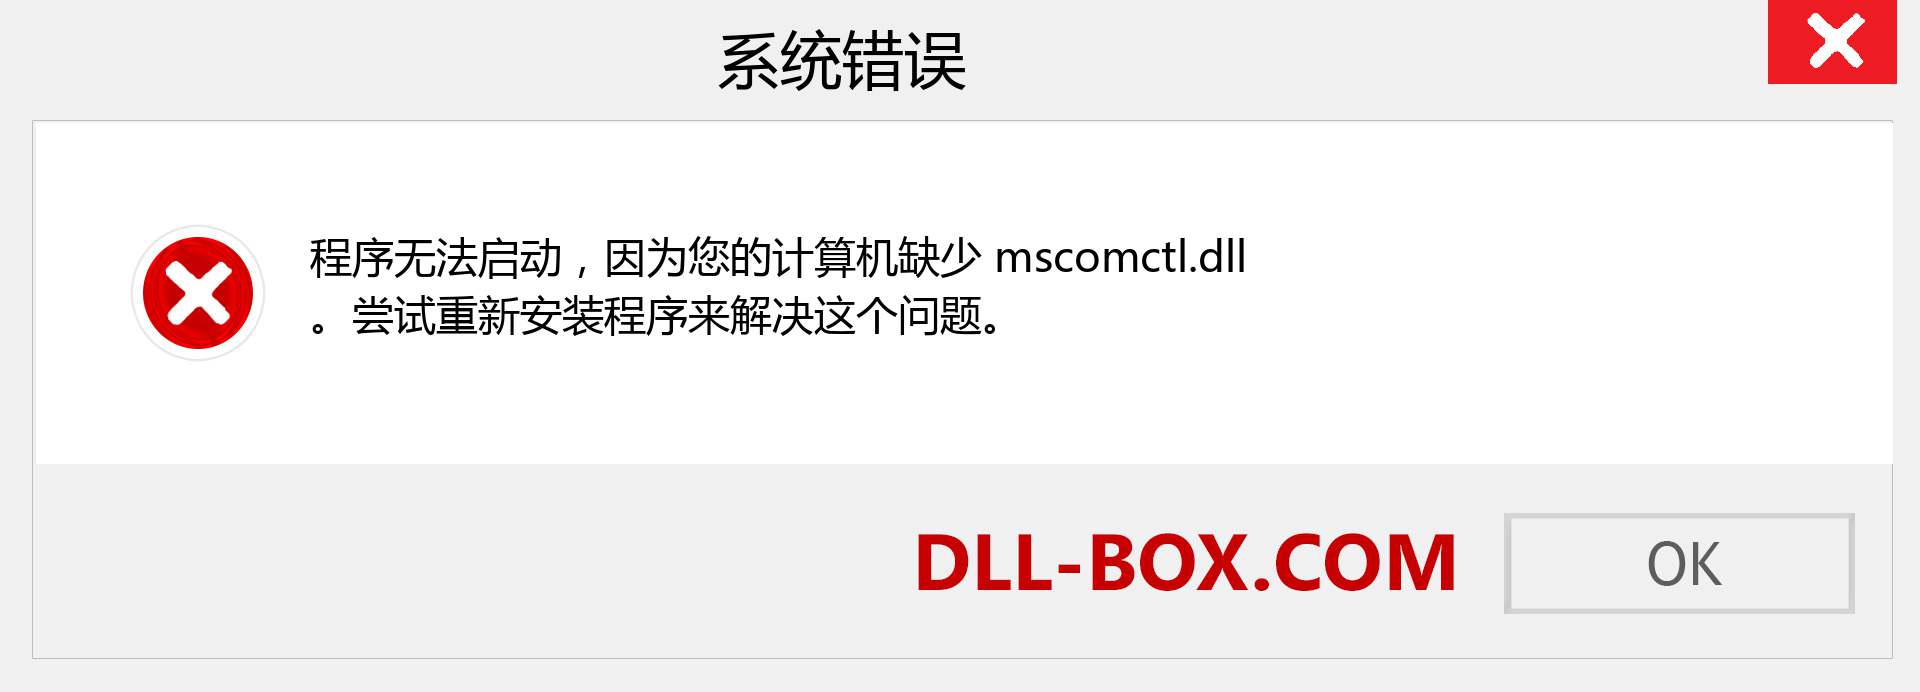 mscomctl.dll 文件丢失？。 适用于 Windows 7、8、10 的下载 - 修复 Windows、照片、图像上的 mscomctl dll 丢失错误